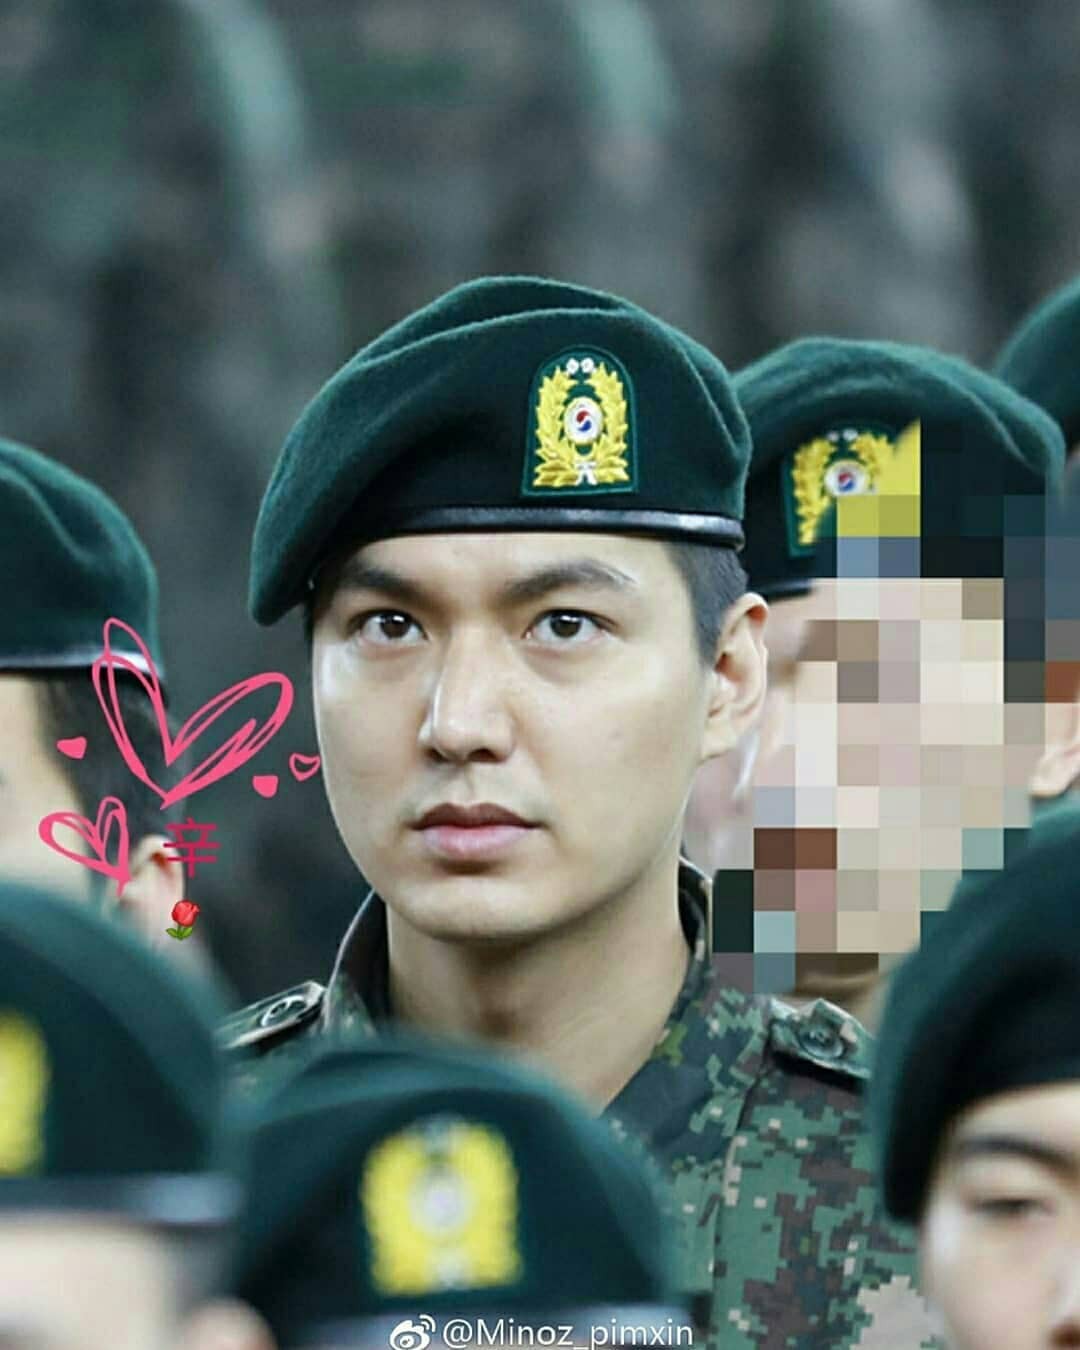 Tài tử Lee Min Ho béo phù cả mặt, nhưng vẫn điển trai với nhan sắc mộc 100% trong quân ngũ - Ảnh 7.